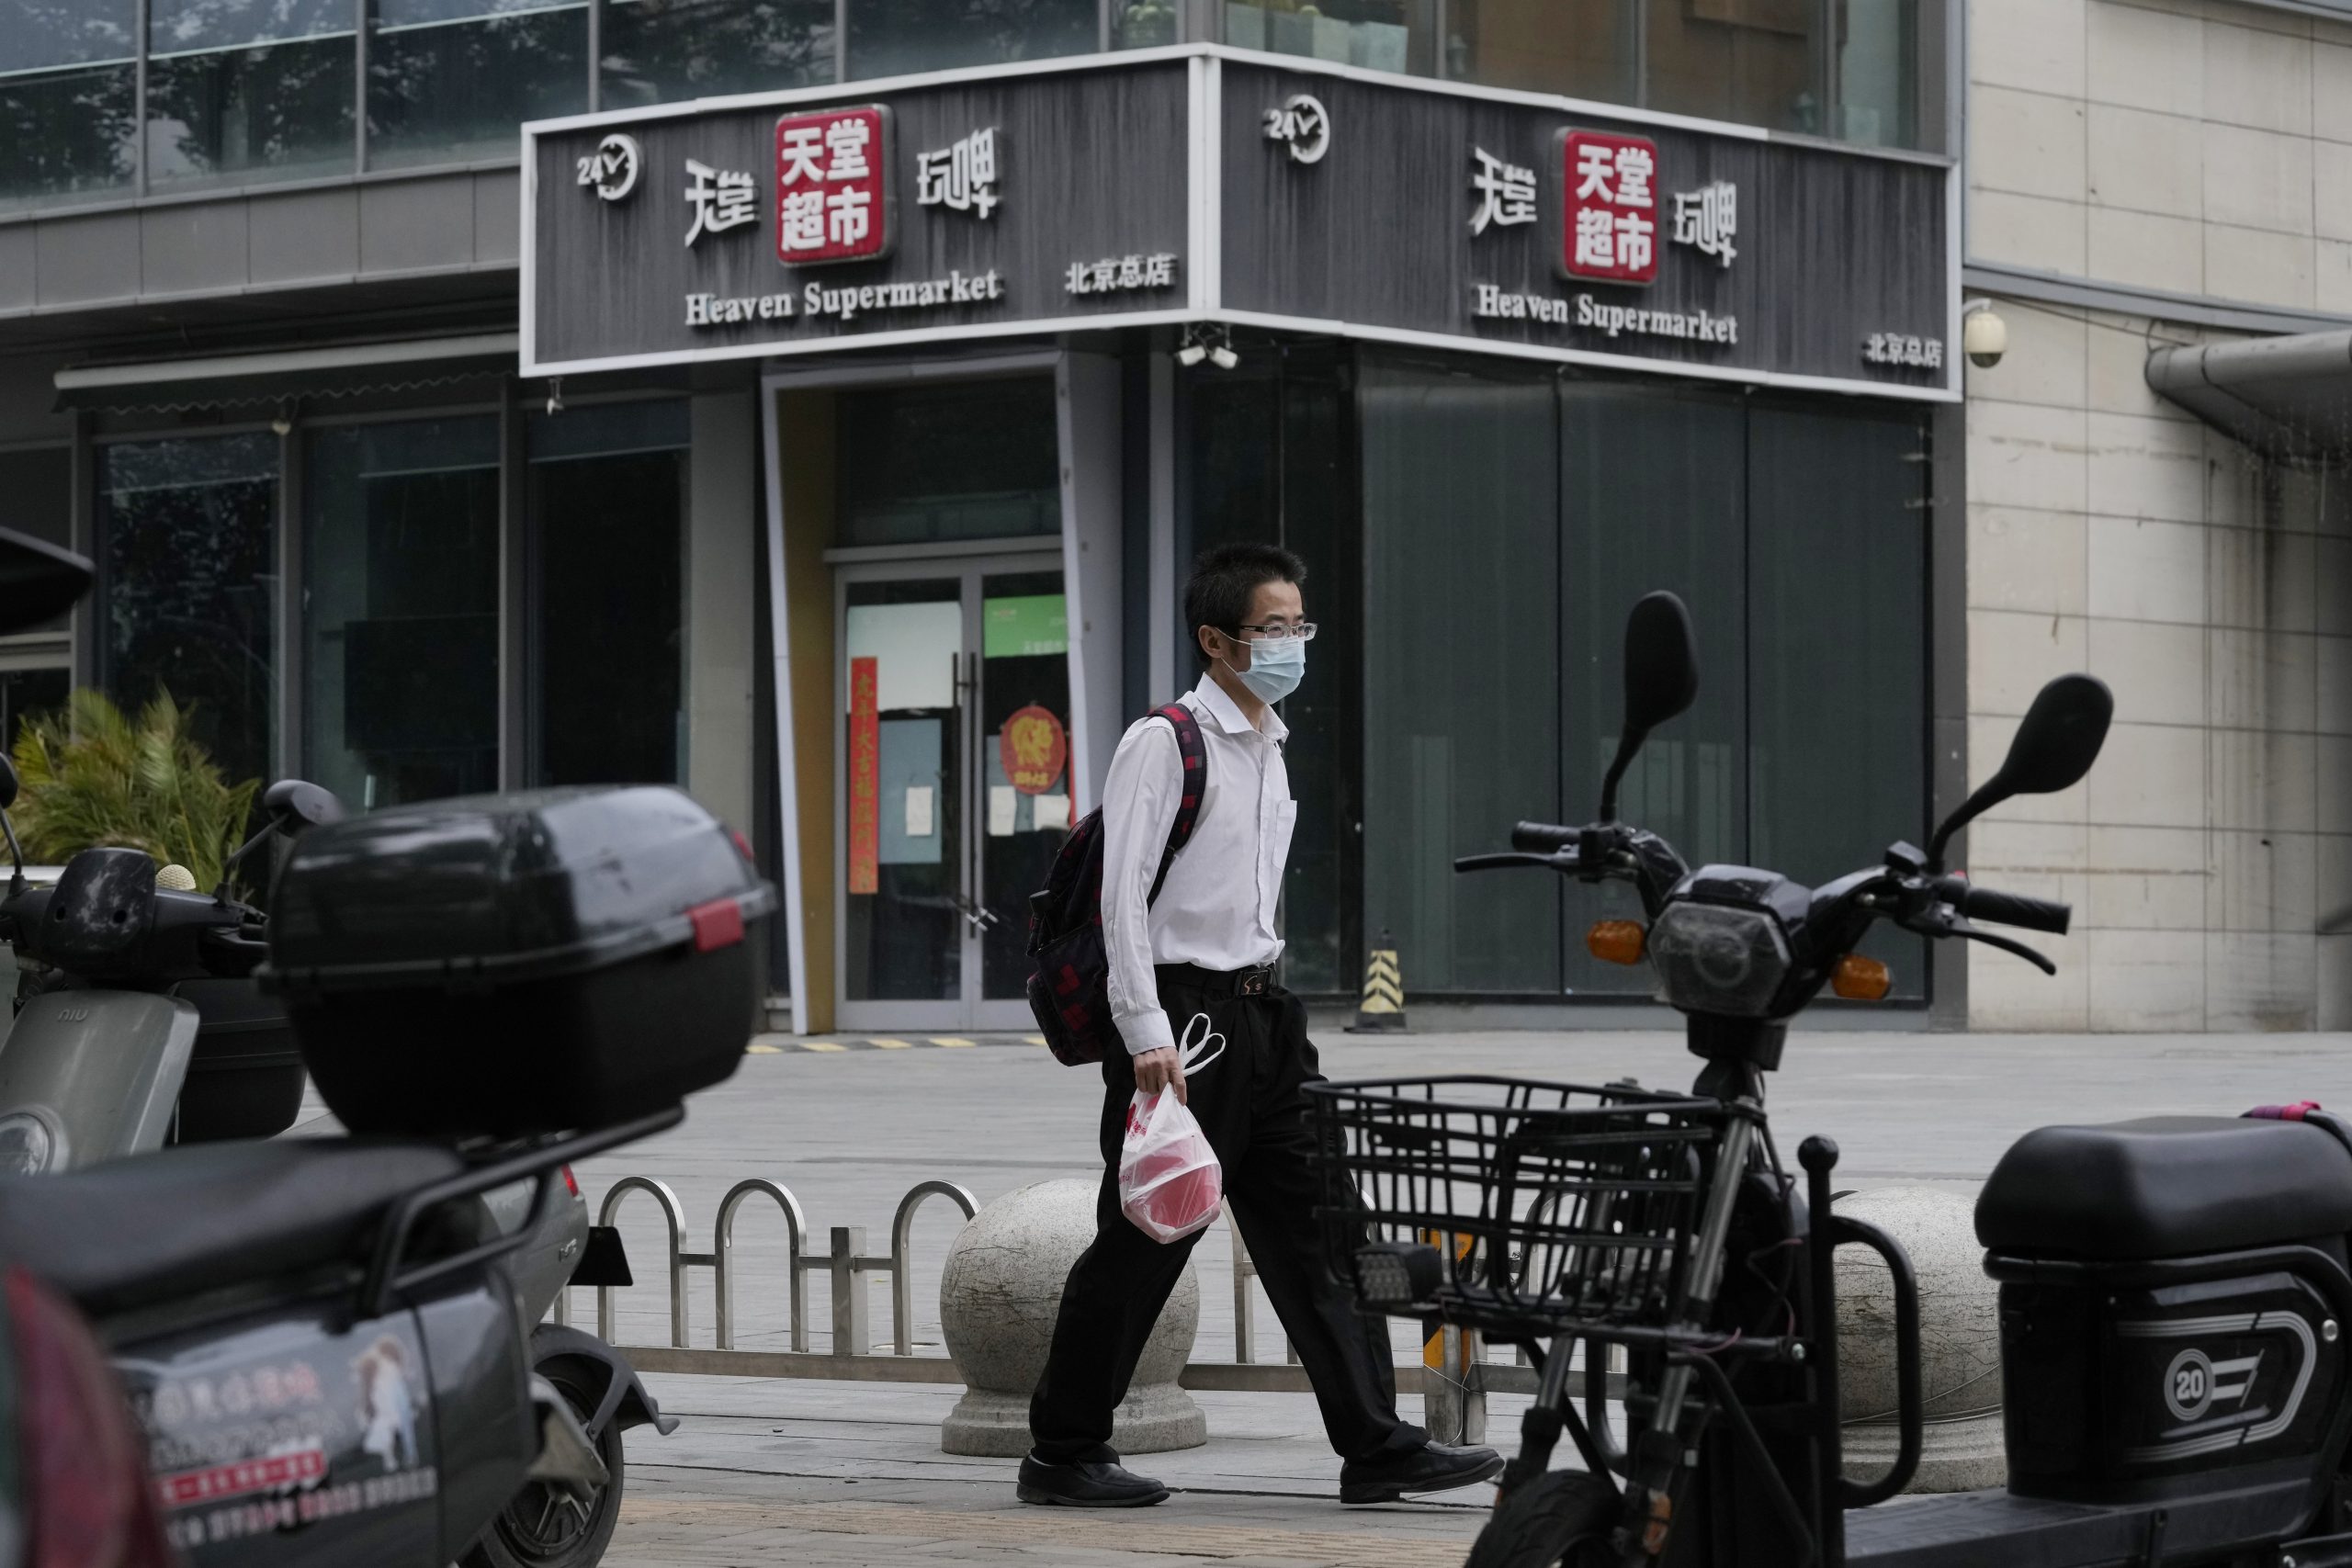  酒吧群组感染扩大 北京三里屯所有酒吧停业 700餐饮企停堂食 